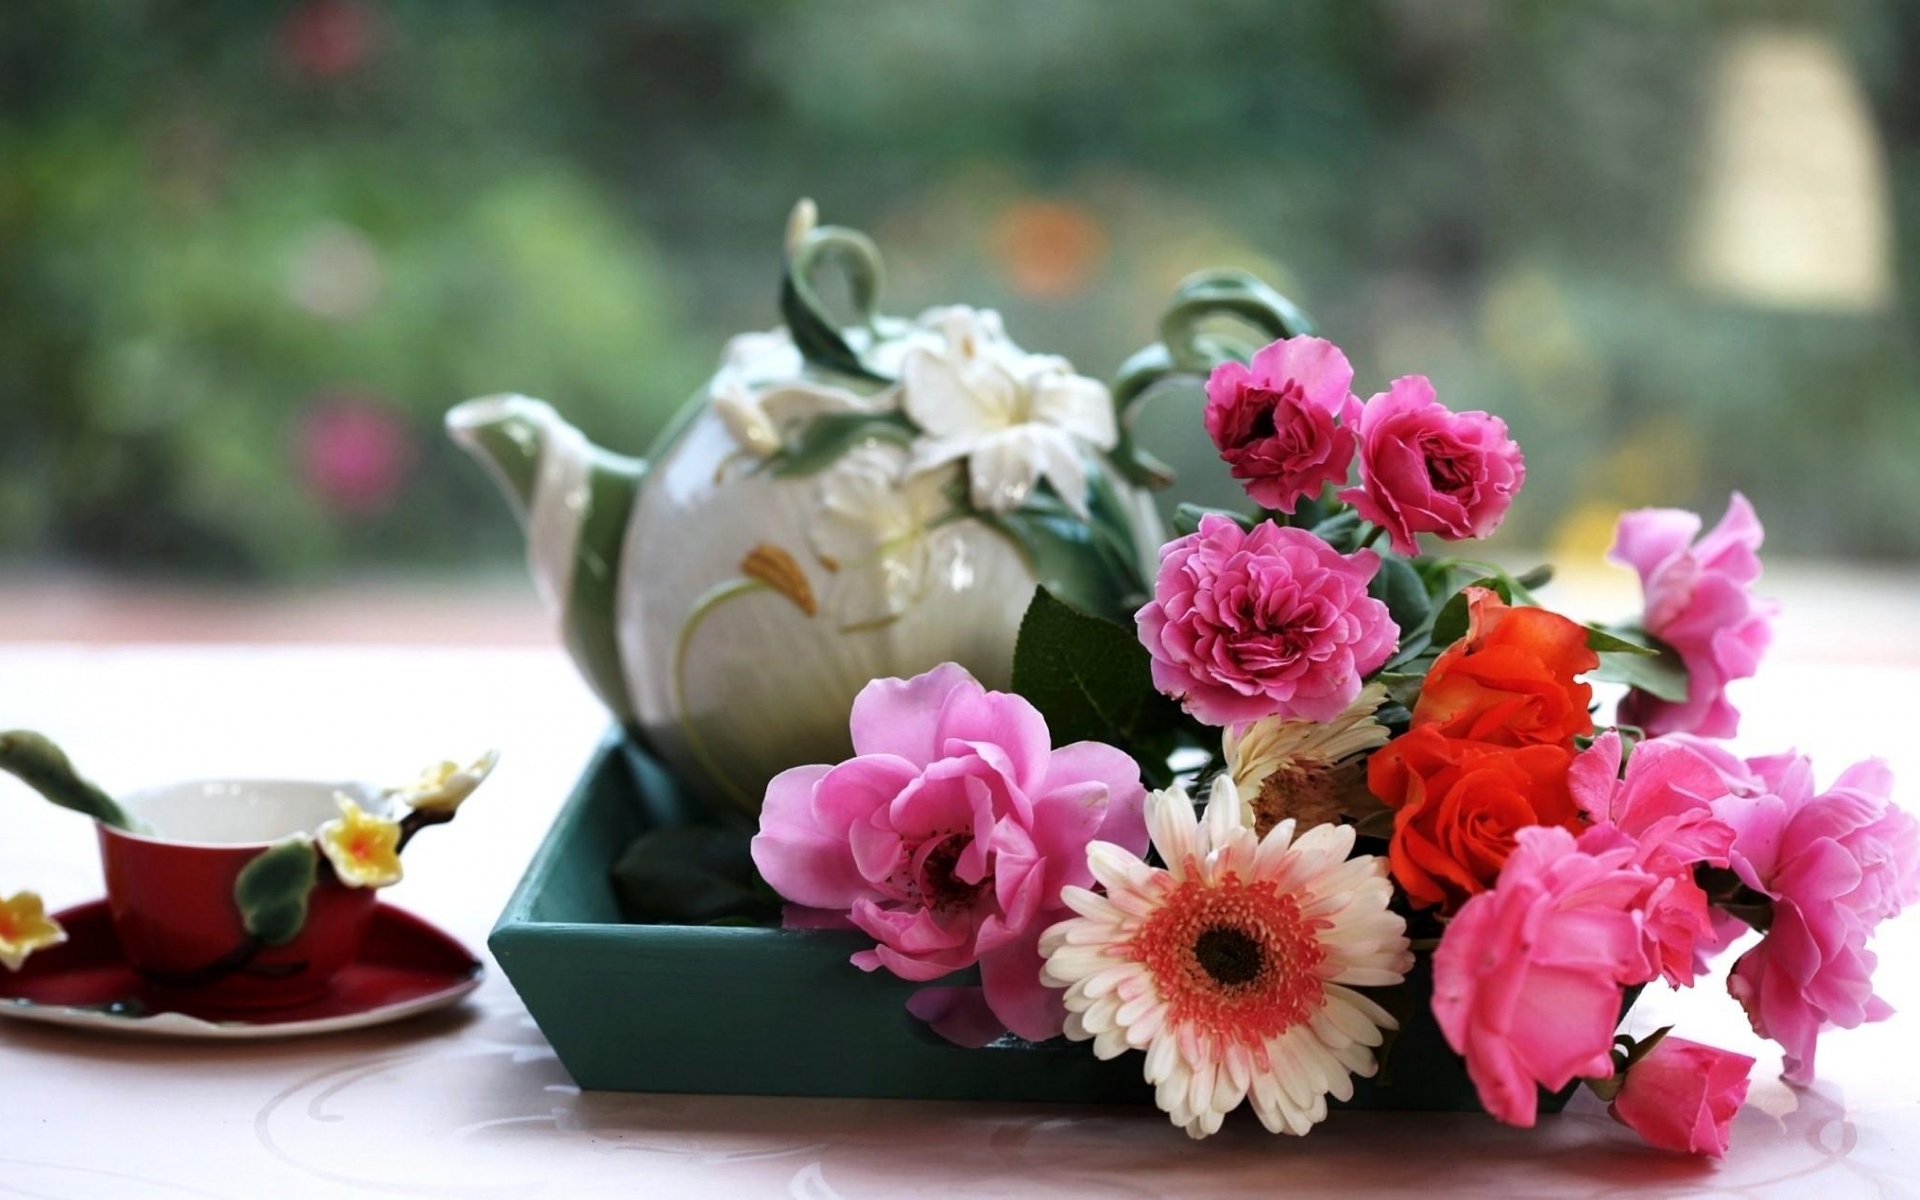 Картинки Герберы, розы, цветы, поднос, чай, чашка, стол фото и обои на рабочий стол